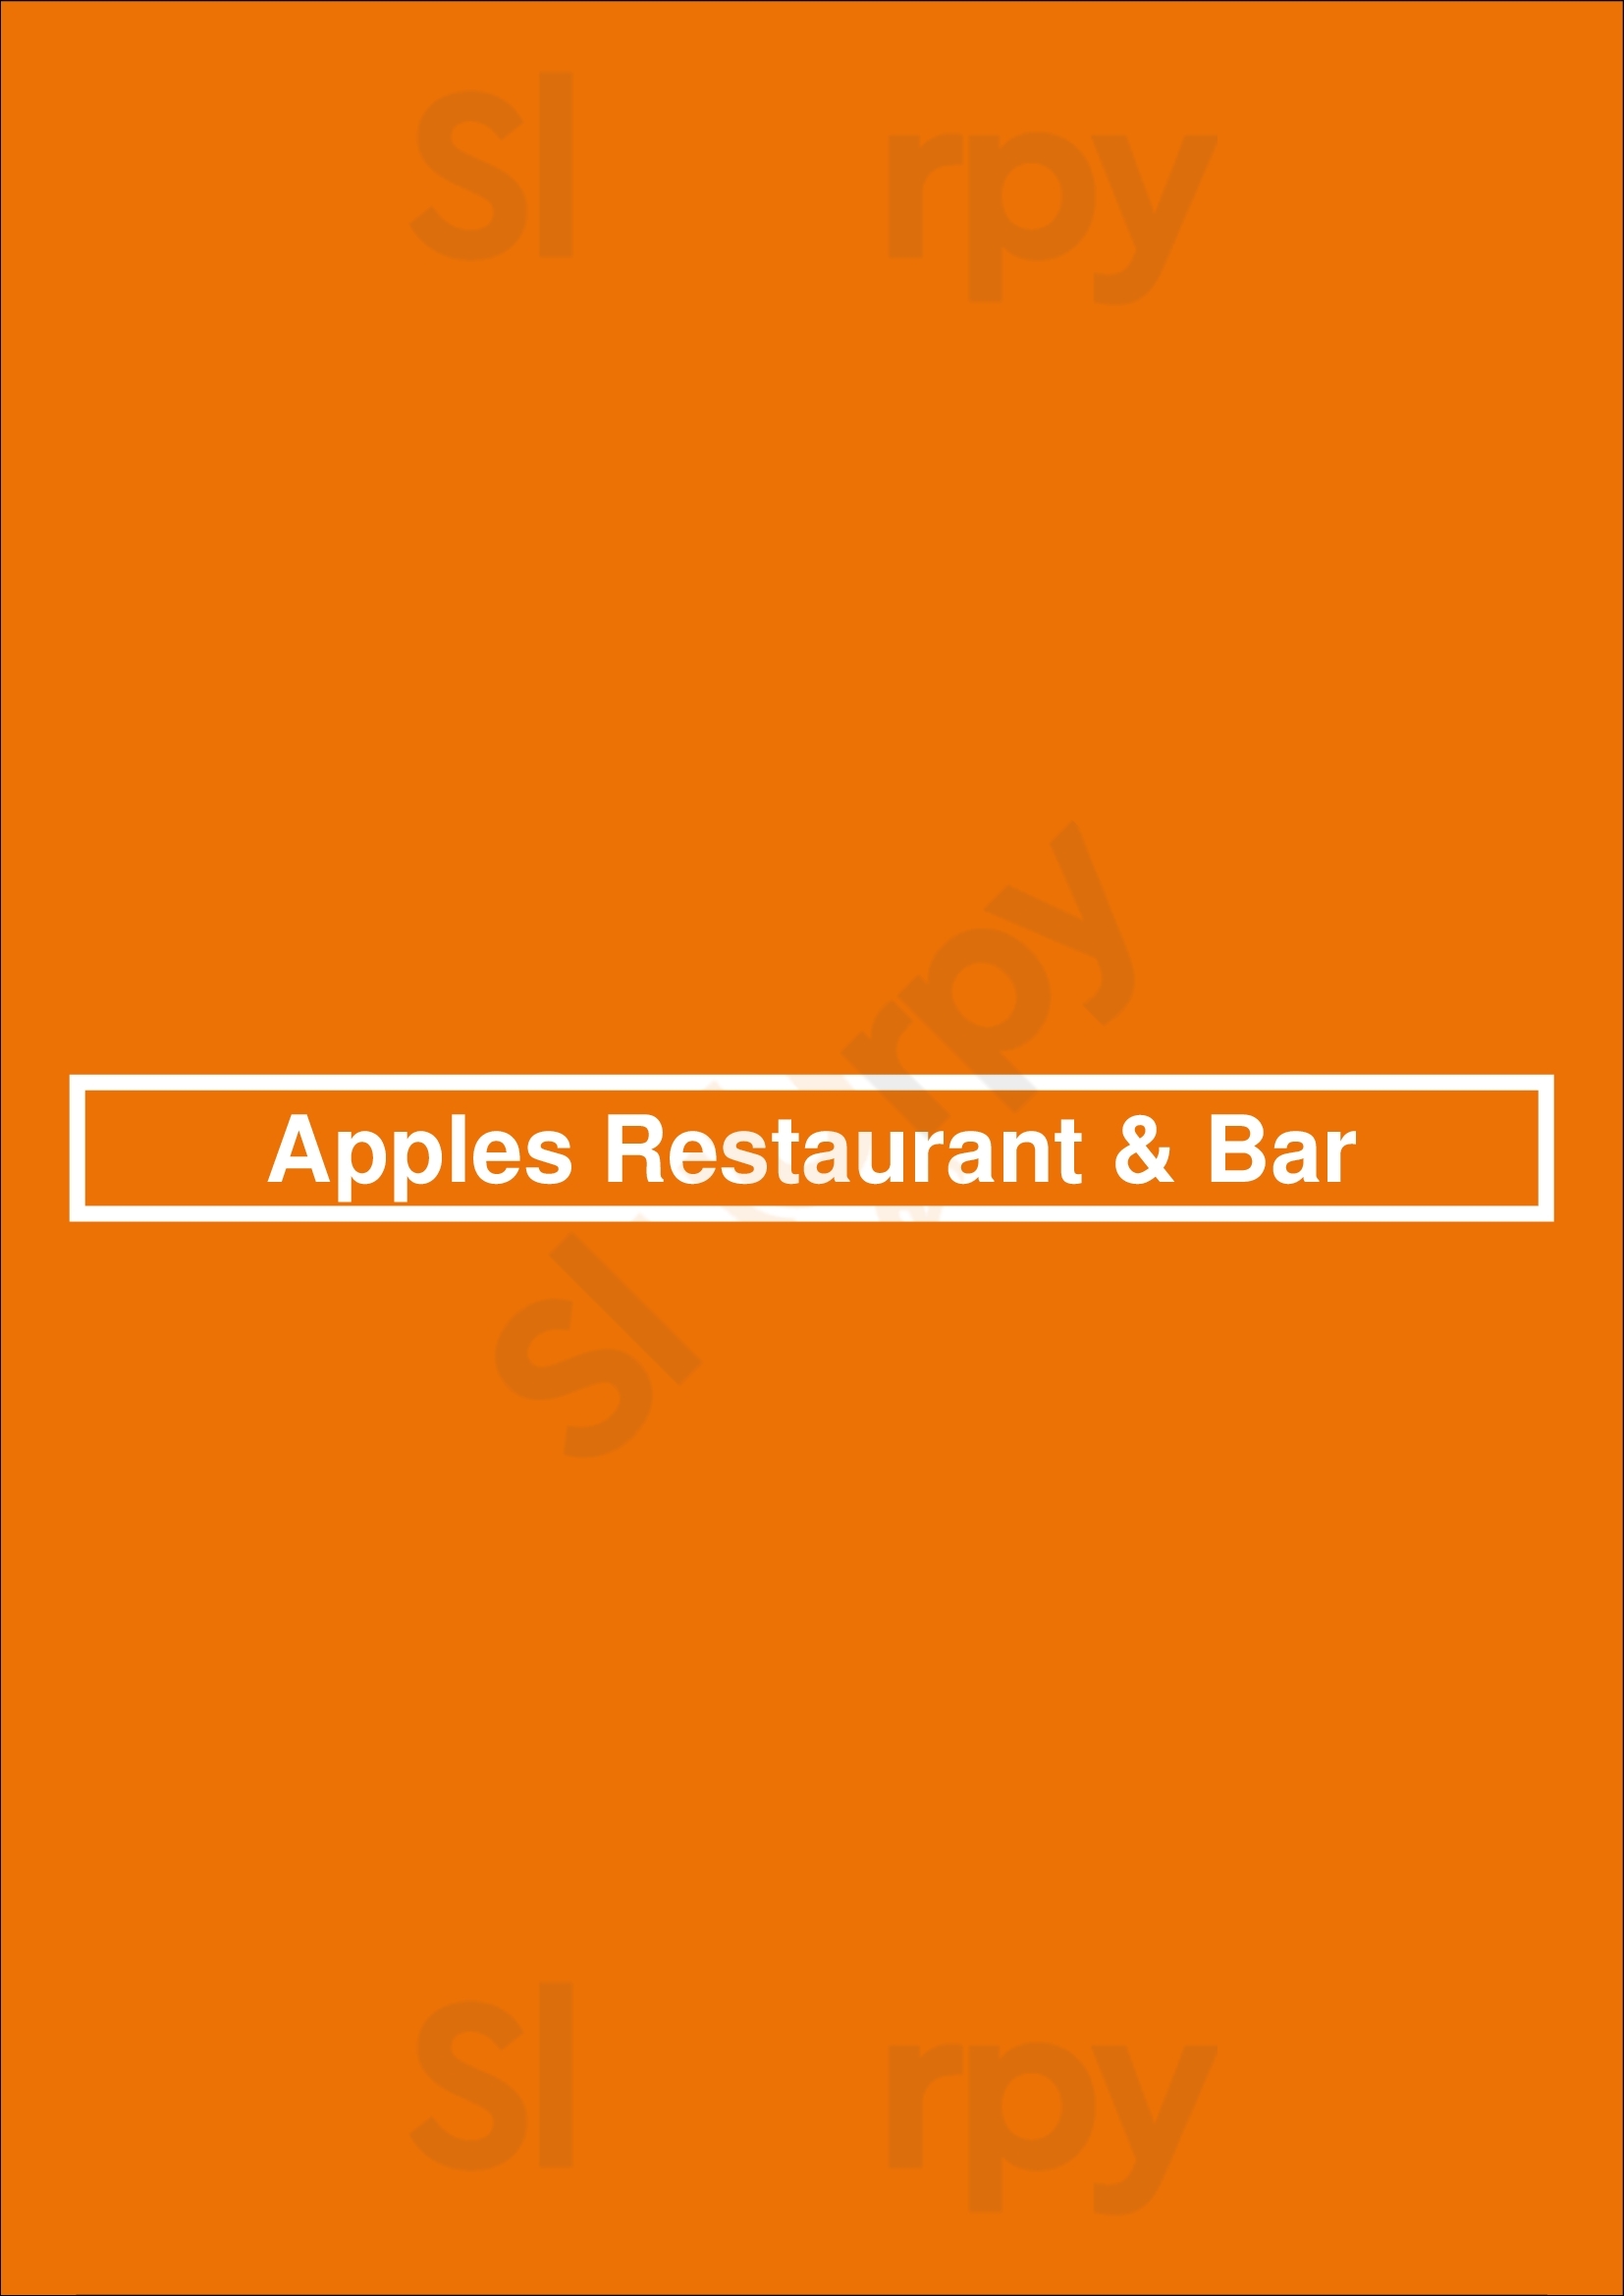 Apples Restaurant & Bar Hamburg Menu - 1